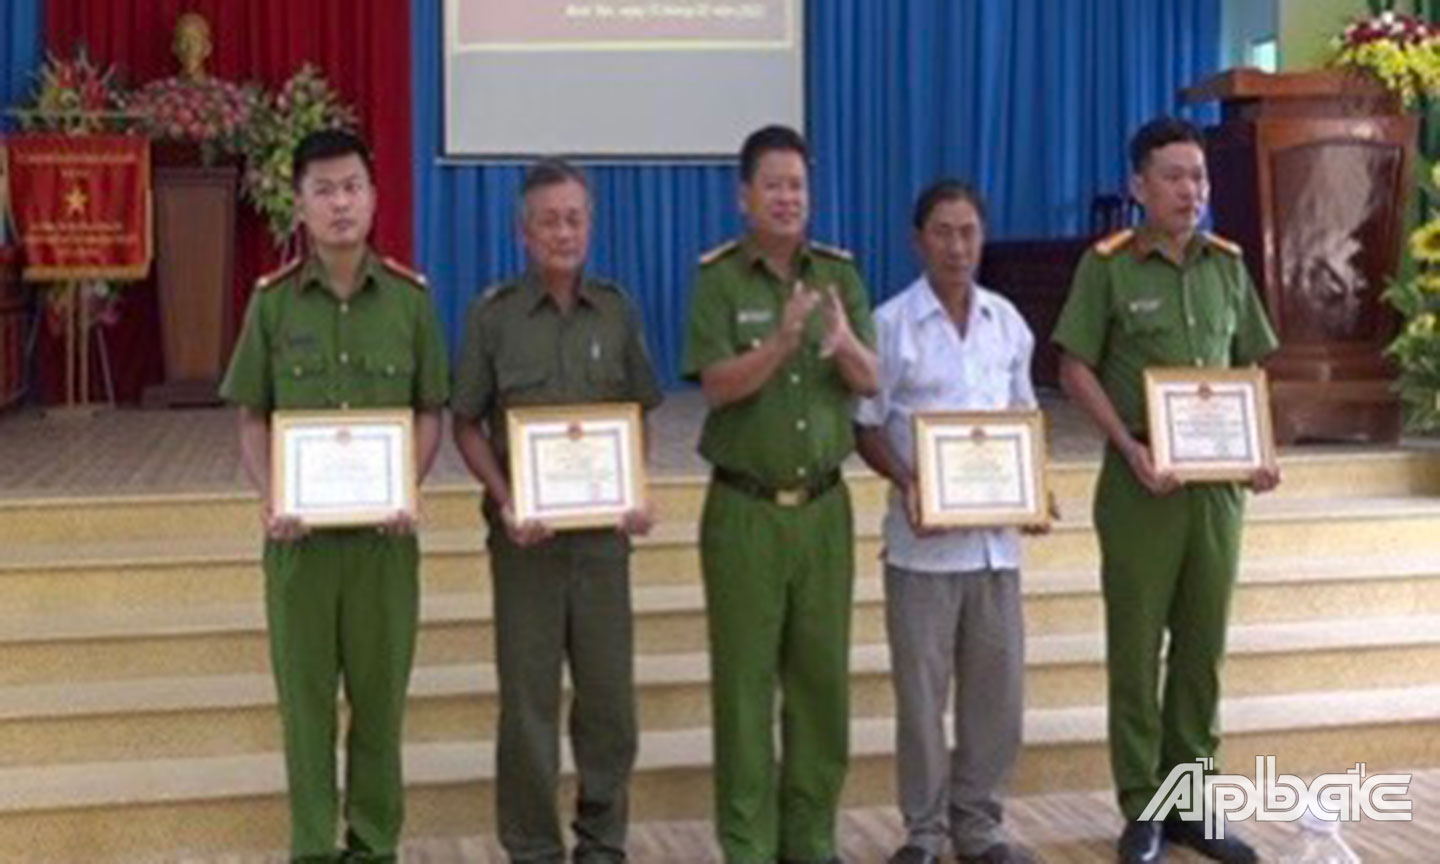 Thượng tá Nguyễn Hải An, Trưởng Công an huyện Gò Công Tây trao tặng Bằng khen cho tập thể và cá nhân đạt thành tích xuất sắc trong thực hiện Kế hoạch 145 của Công an huyện Gò Công Tây.